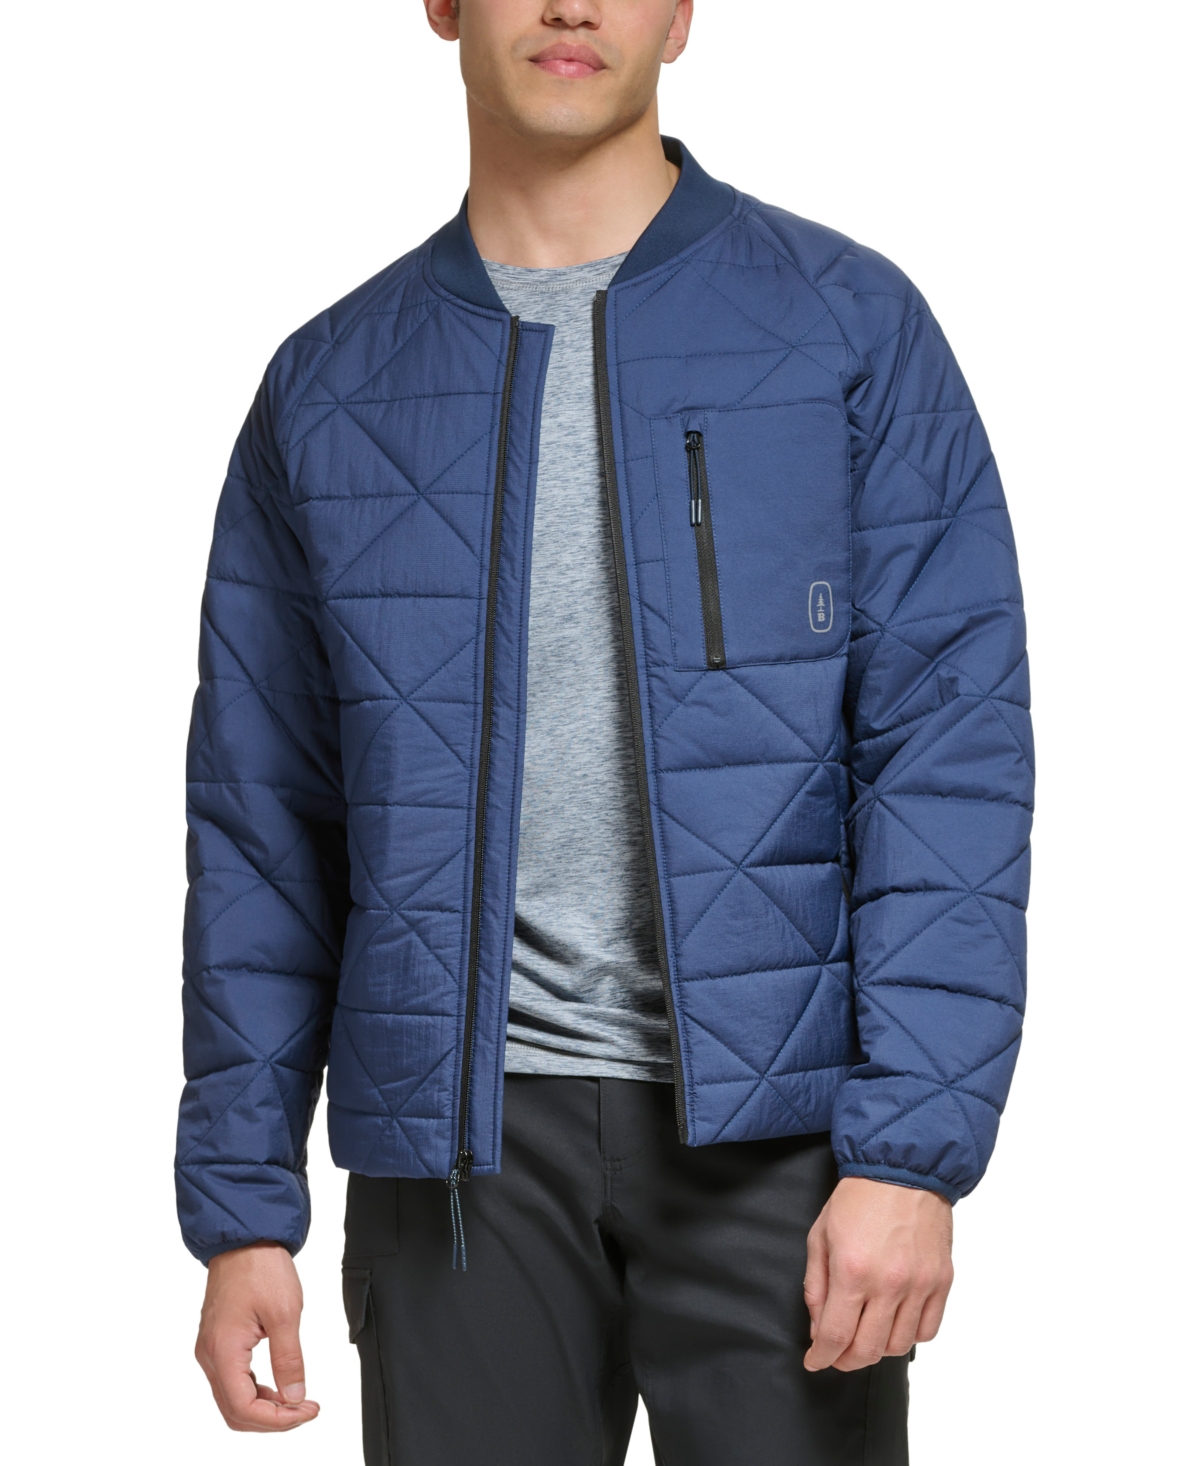 Bass Outdoor Men's Packable Liner Jacket